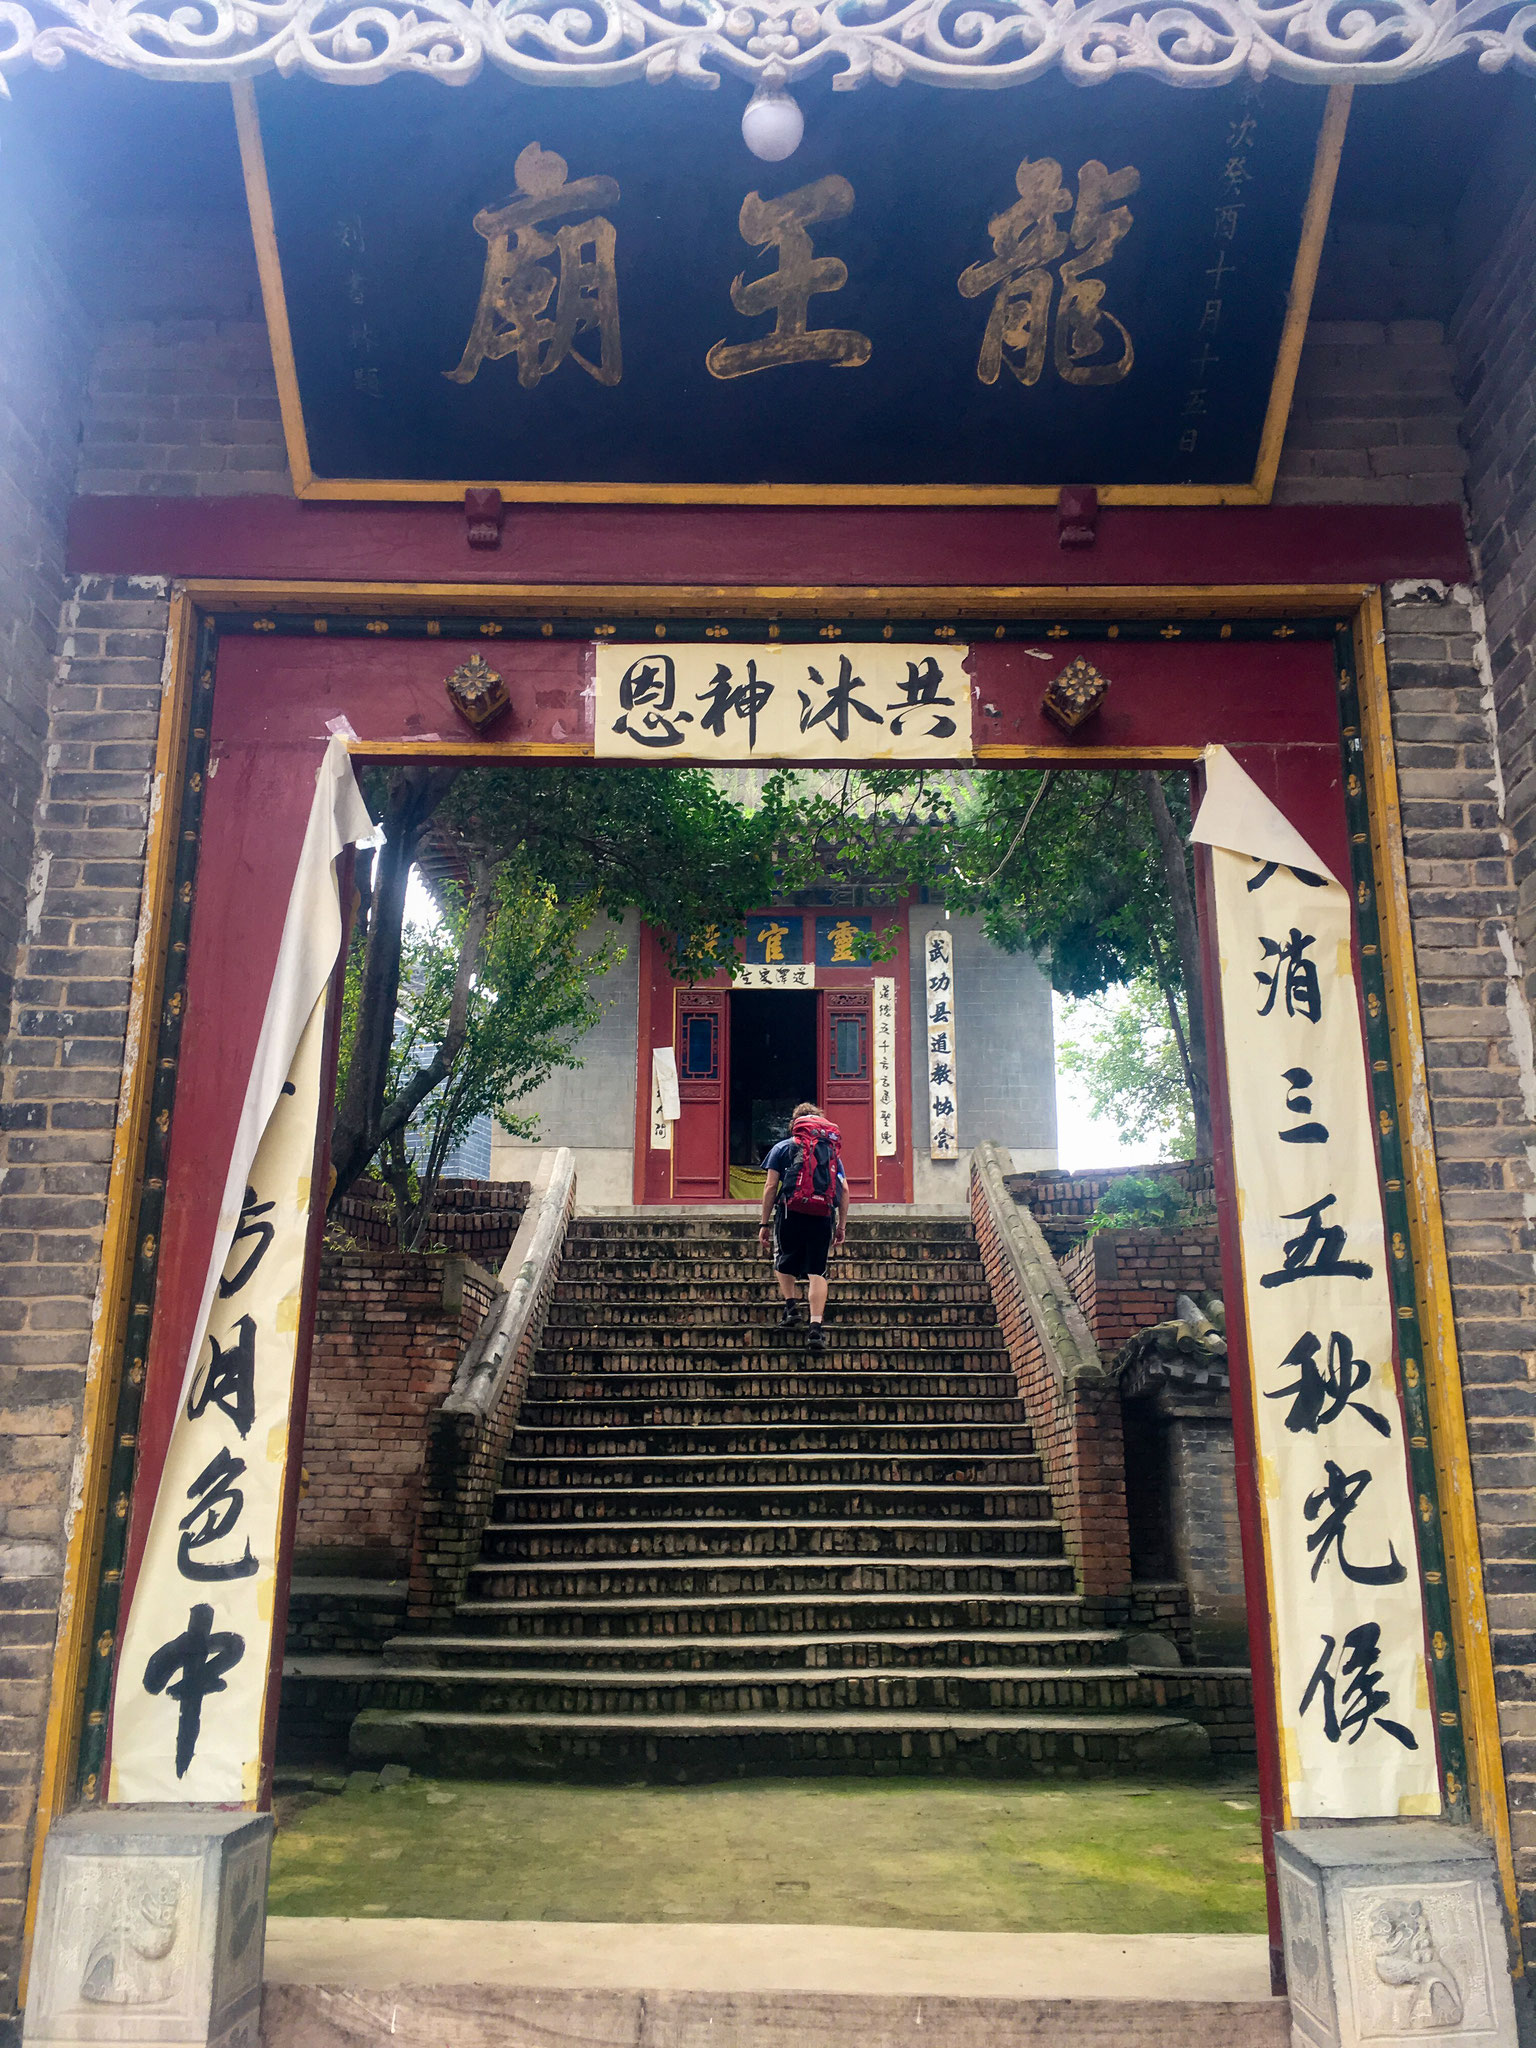 Dragon King Temple 龙王庙